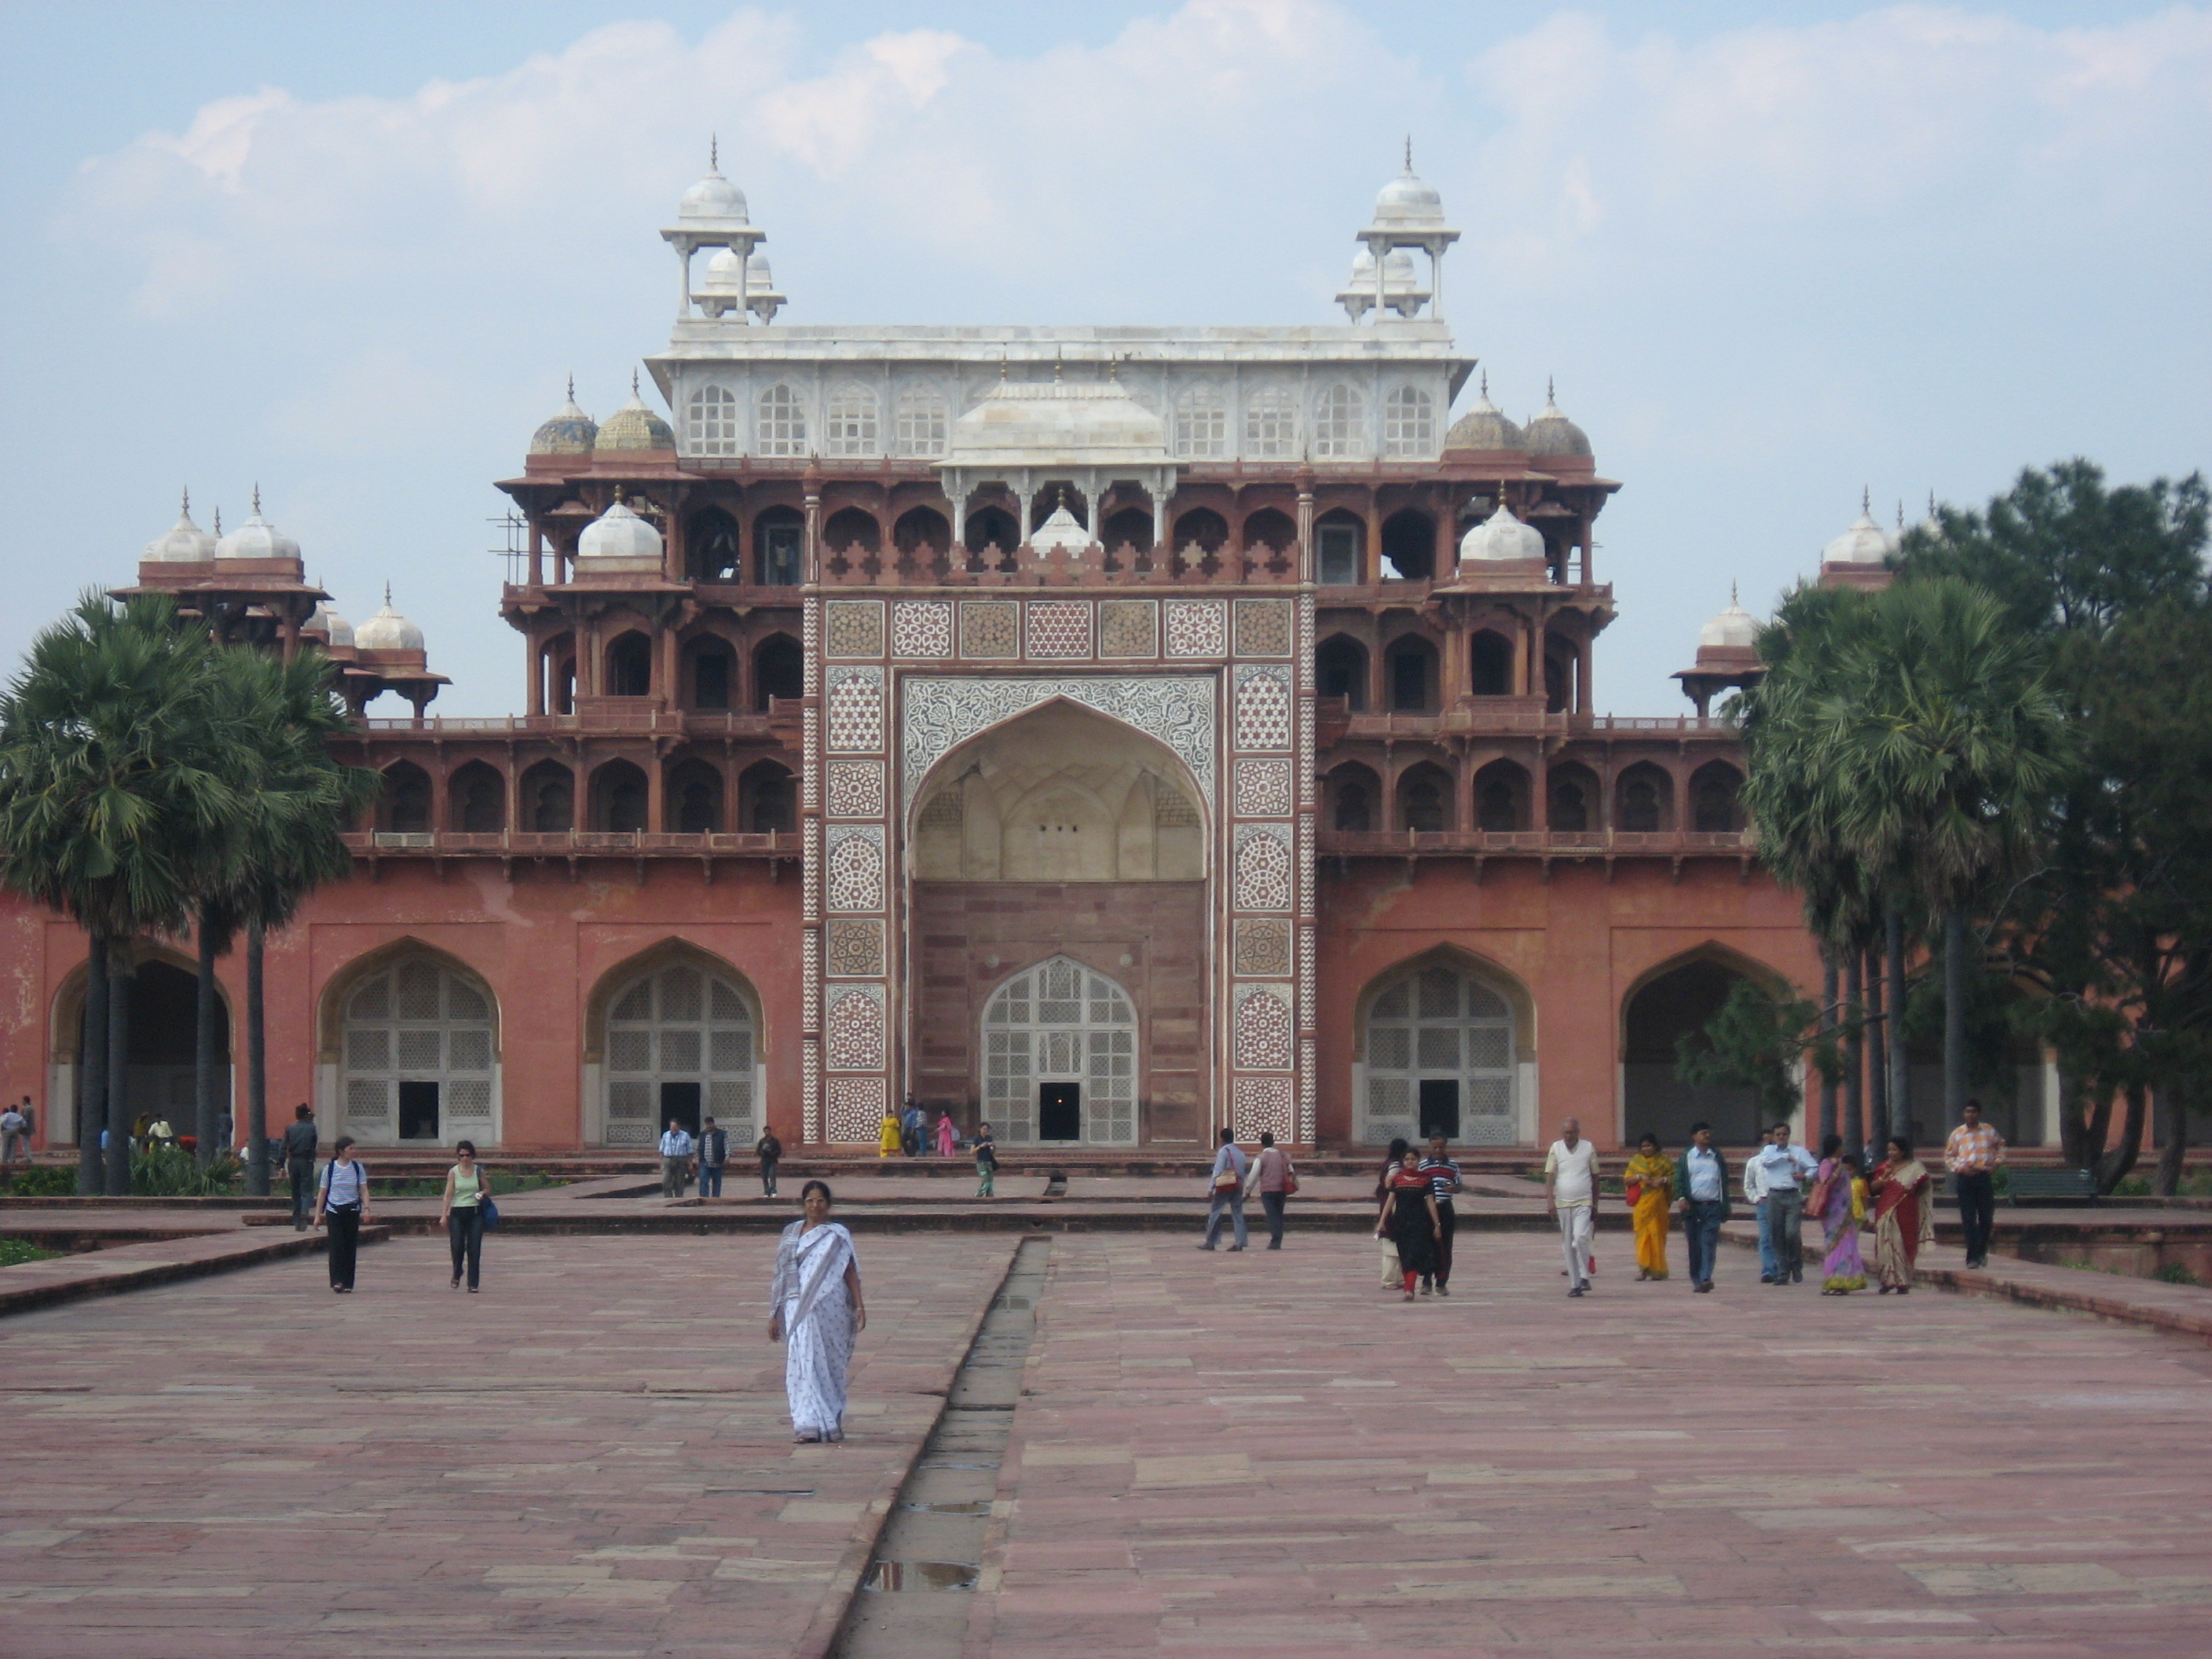 Monumento al Forte di Agra